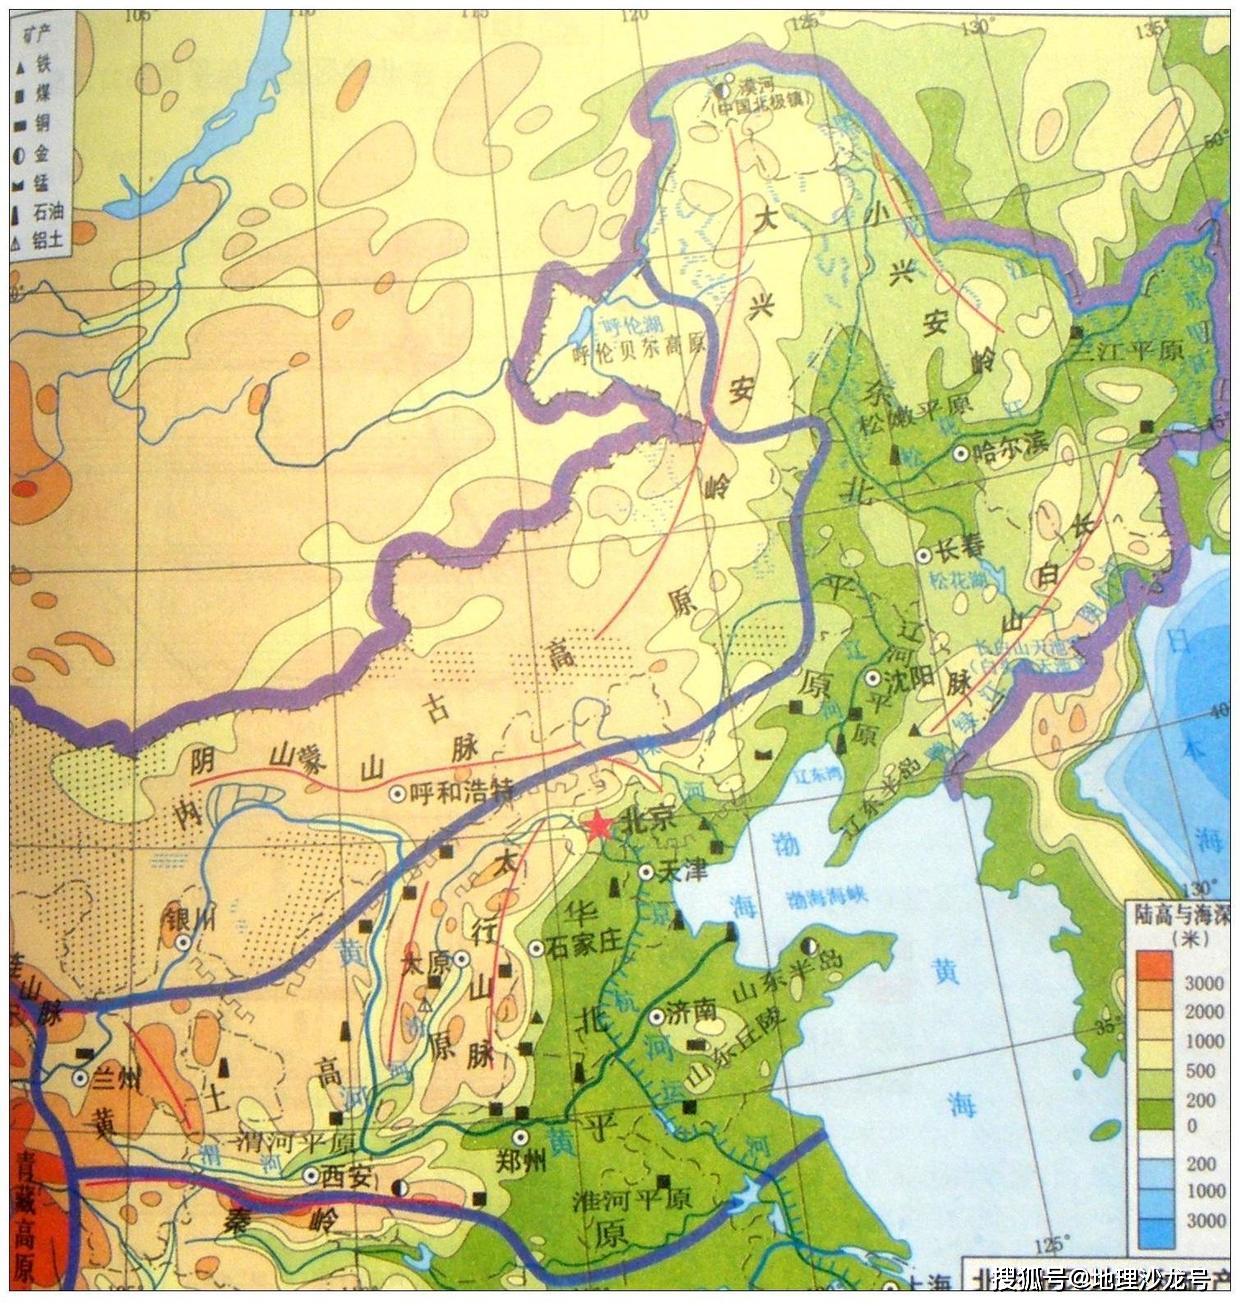 秦岭淮河一线是我国南方地区和北方地区的分界线,你认可吗?